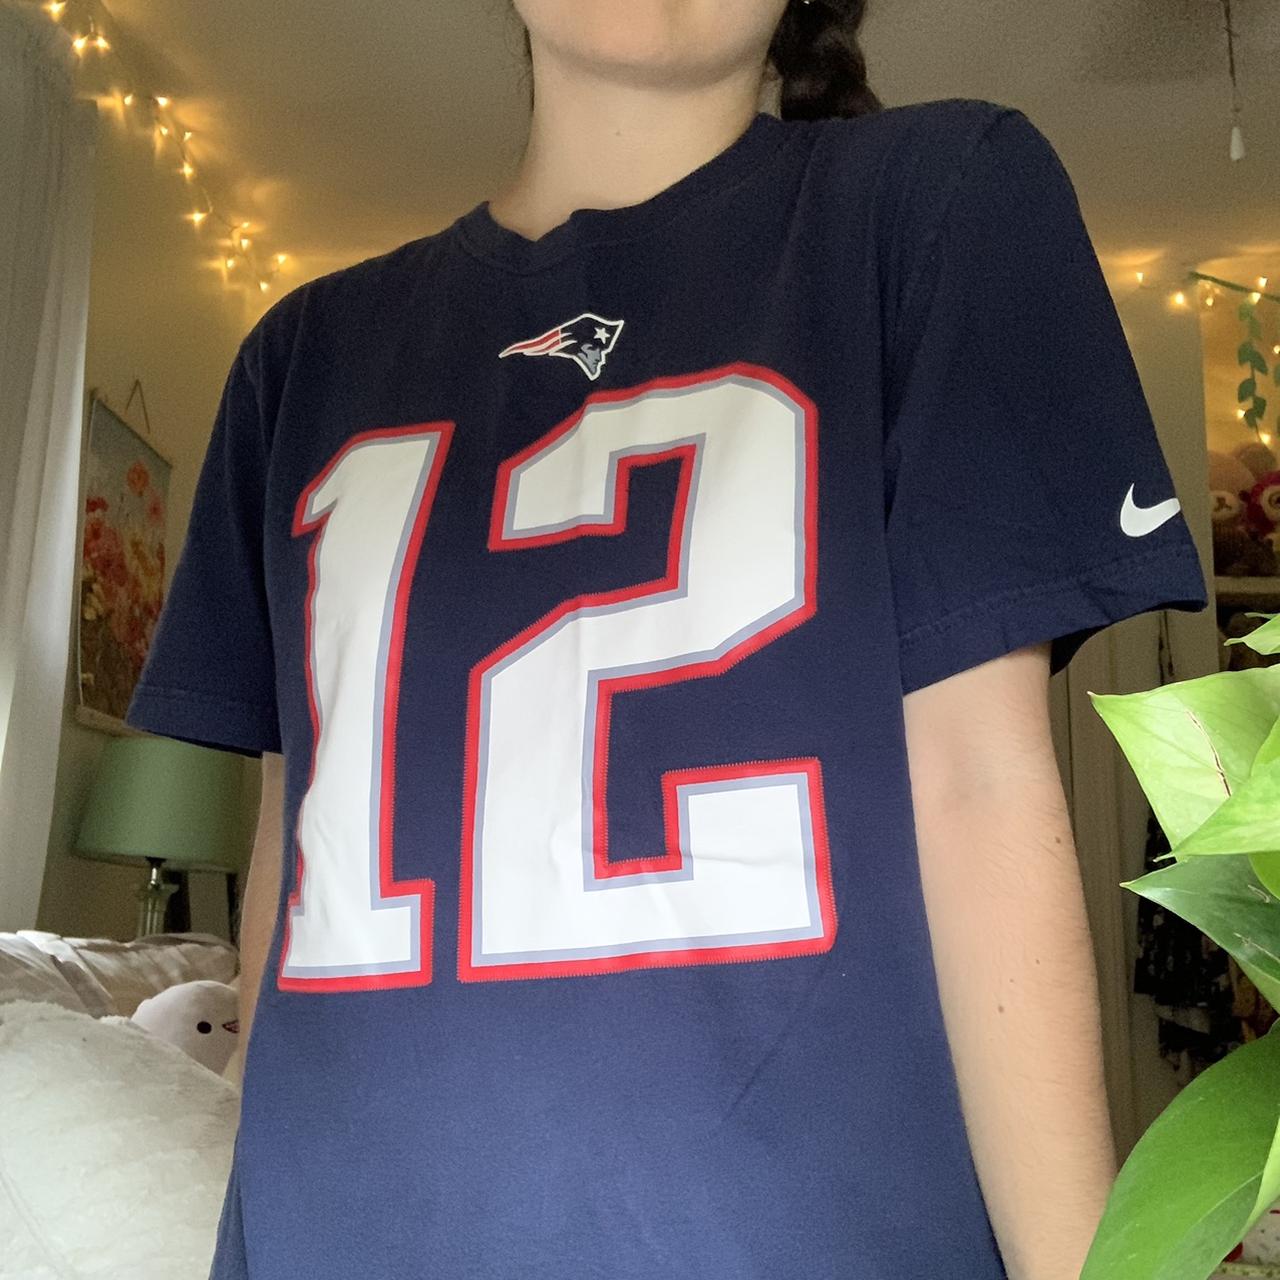 Tom Brady Patriots tee shirt I am 5'3”, 29” waist, - Depop